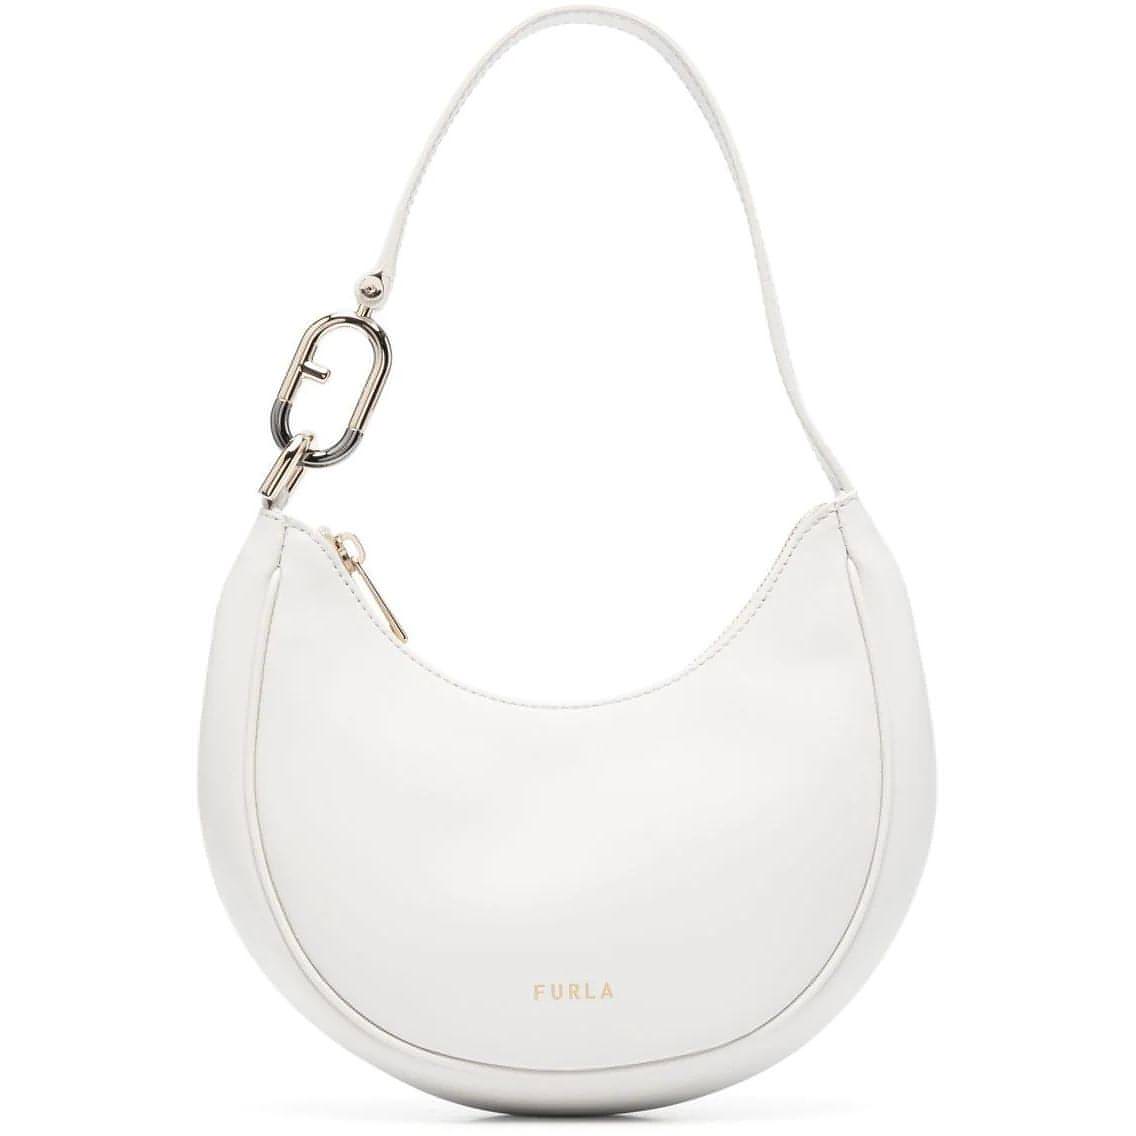 FURLA moteriška balta rankinė Furla primavera shoulder bag